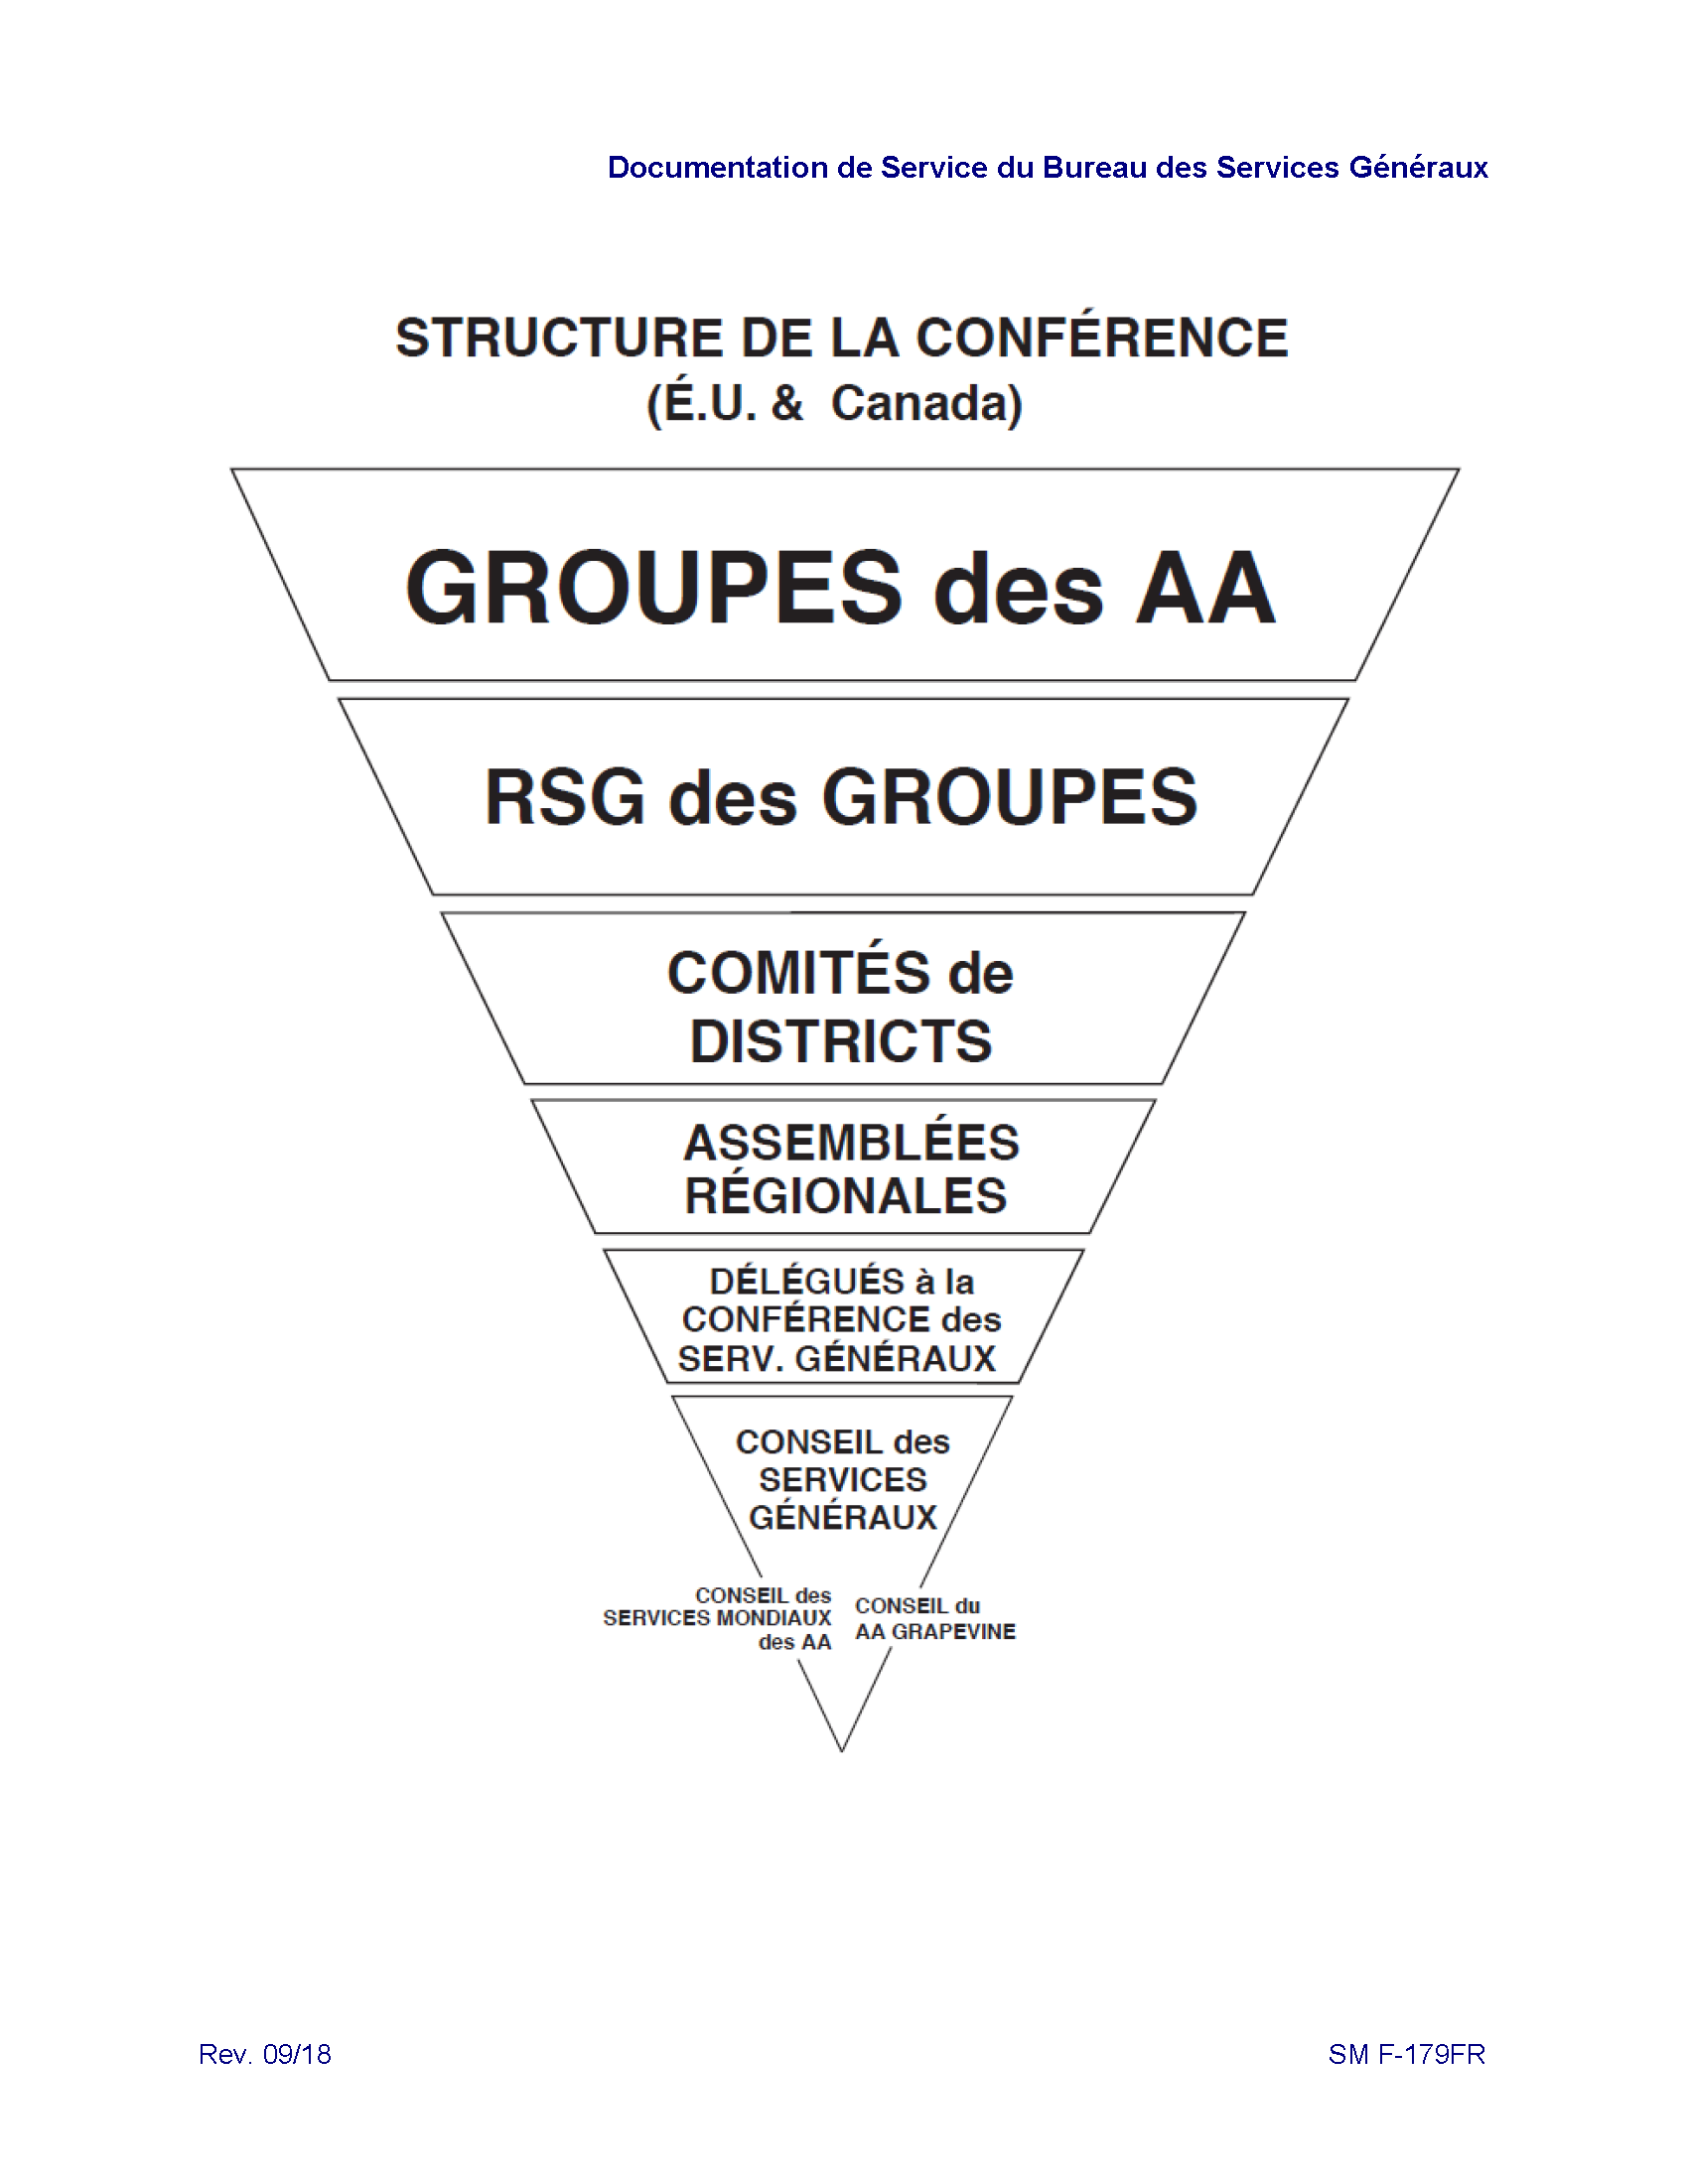 Structure de la Conférence (É.U. & Canada)